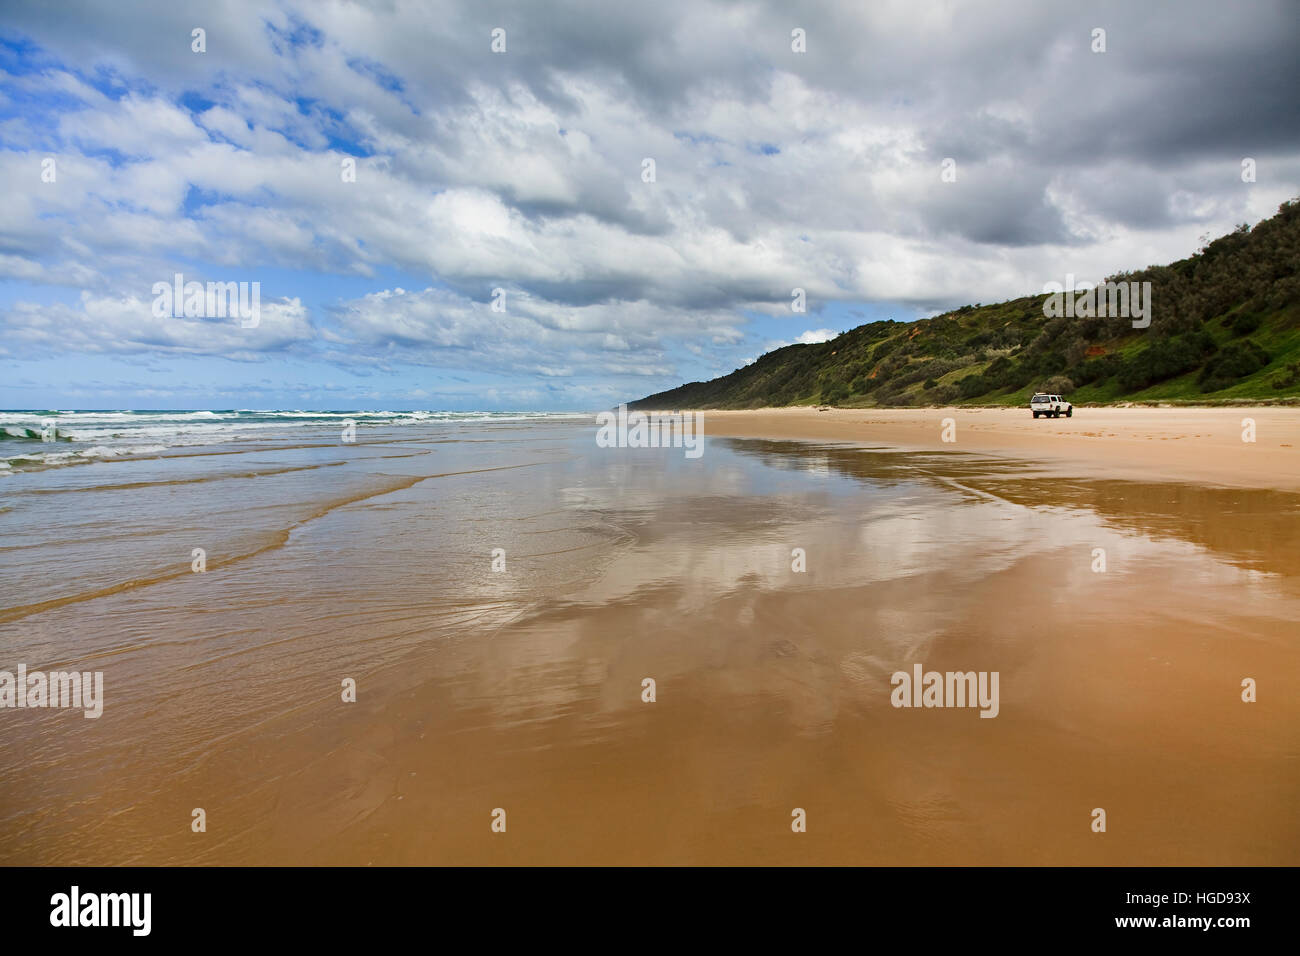 Ampio appartamento wet spiaggia sabbiosa di Fraser Island - autostrada eccellente per 4WD auto turismo. Le onde di marea riflettono le nuvole e il verde delle colline di isola di sabbia. Foto Stock